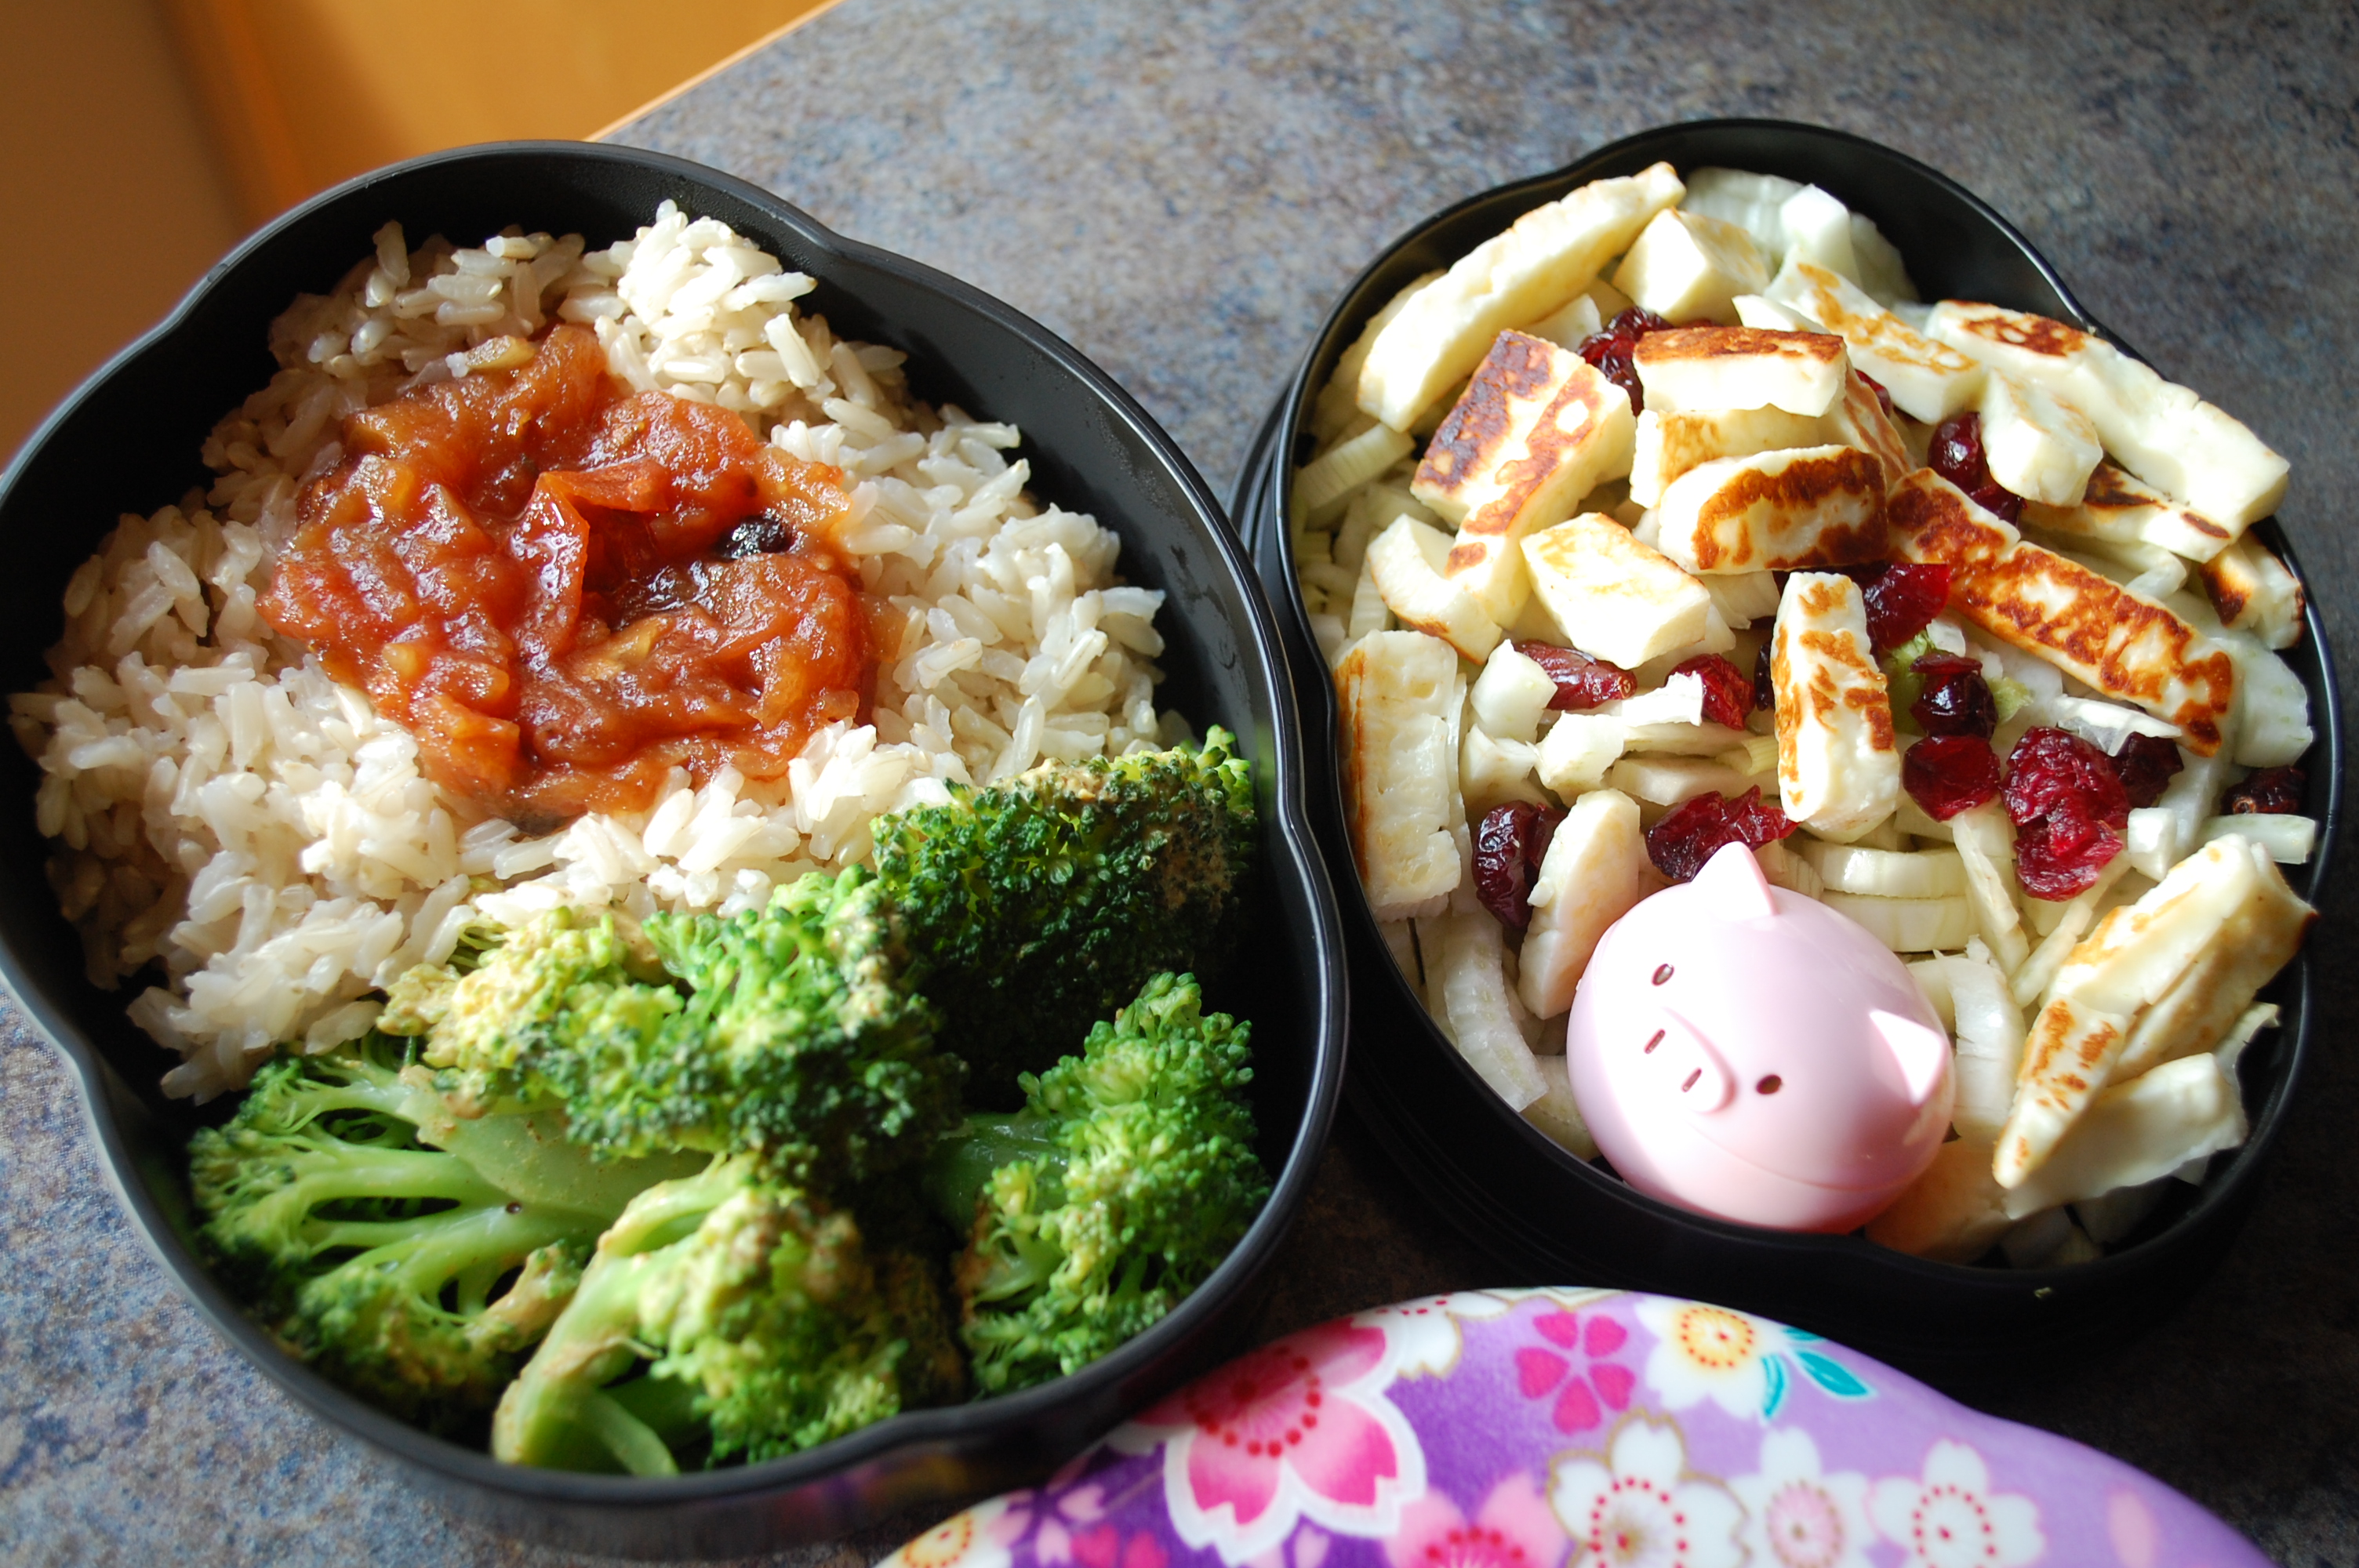 Brown rice, broccoli, feta and halloumi salad